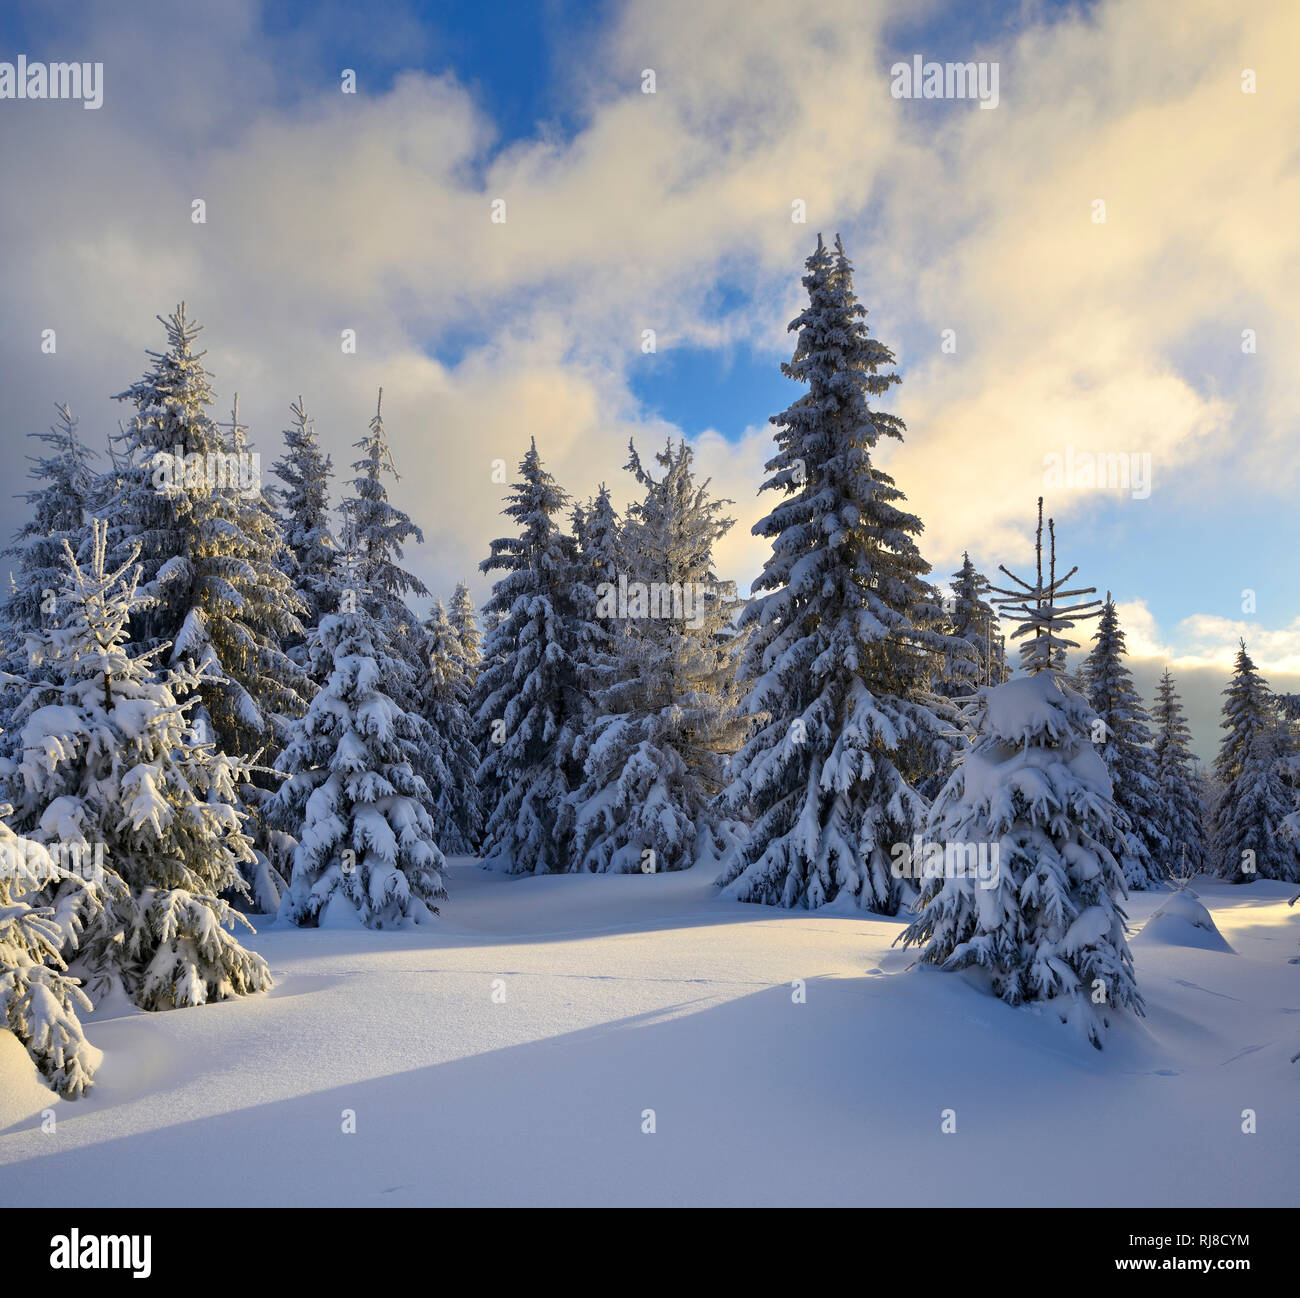 Deutschland, Sachsen-Anhalt, Nationalpark Harz, bei Schierke, Fichten mit Schnee, Abendlicht, tief verschneite Landschaft im Winter, Stock Photo